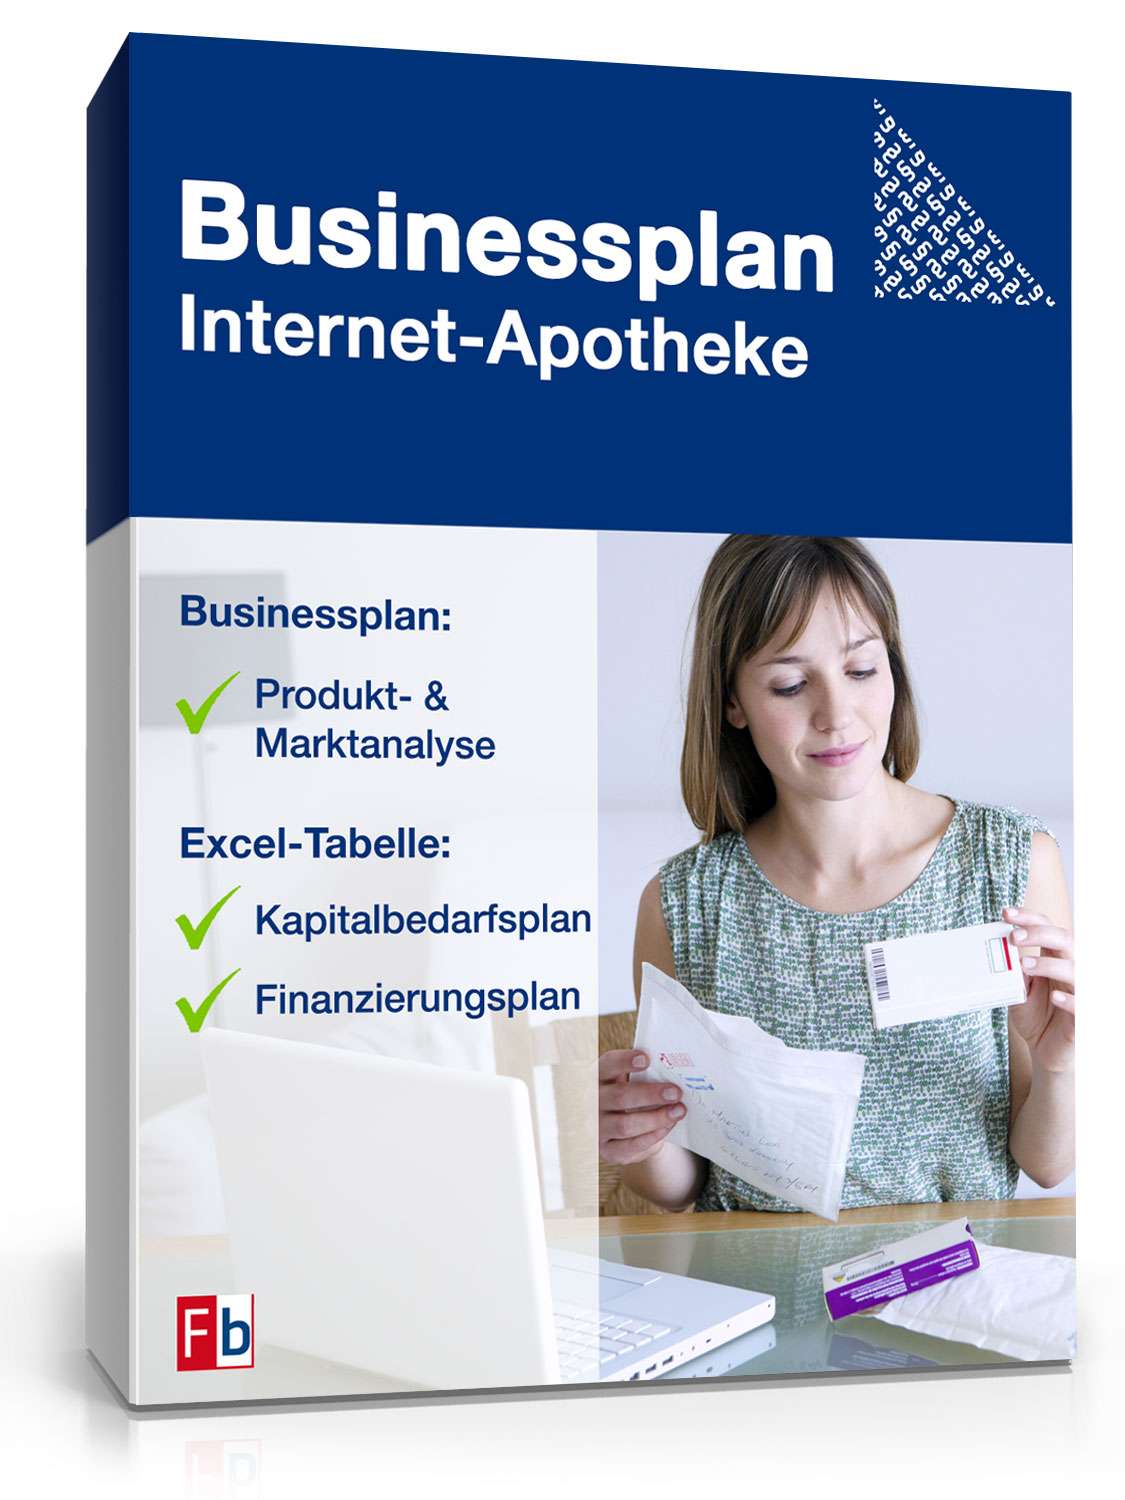 Hauptbild des Produkts: Businessplan Internet-Apotheke